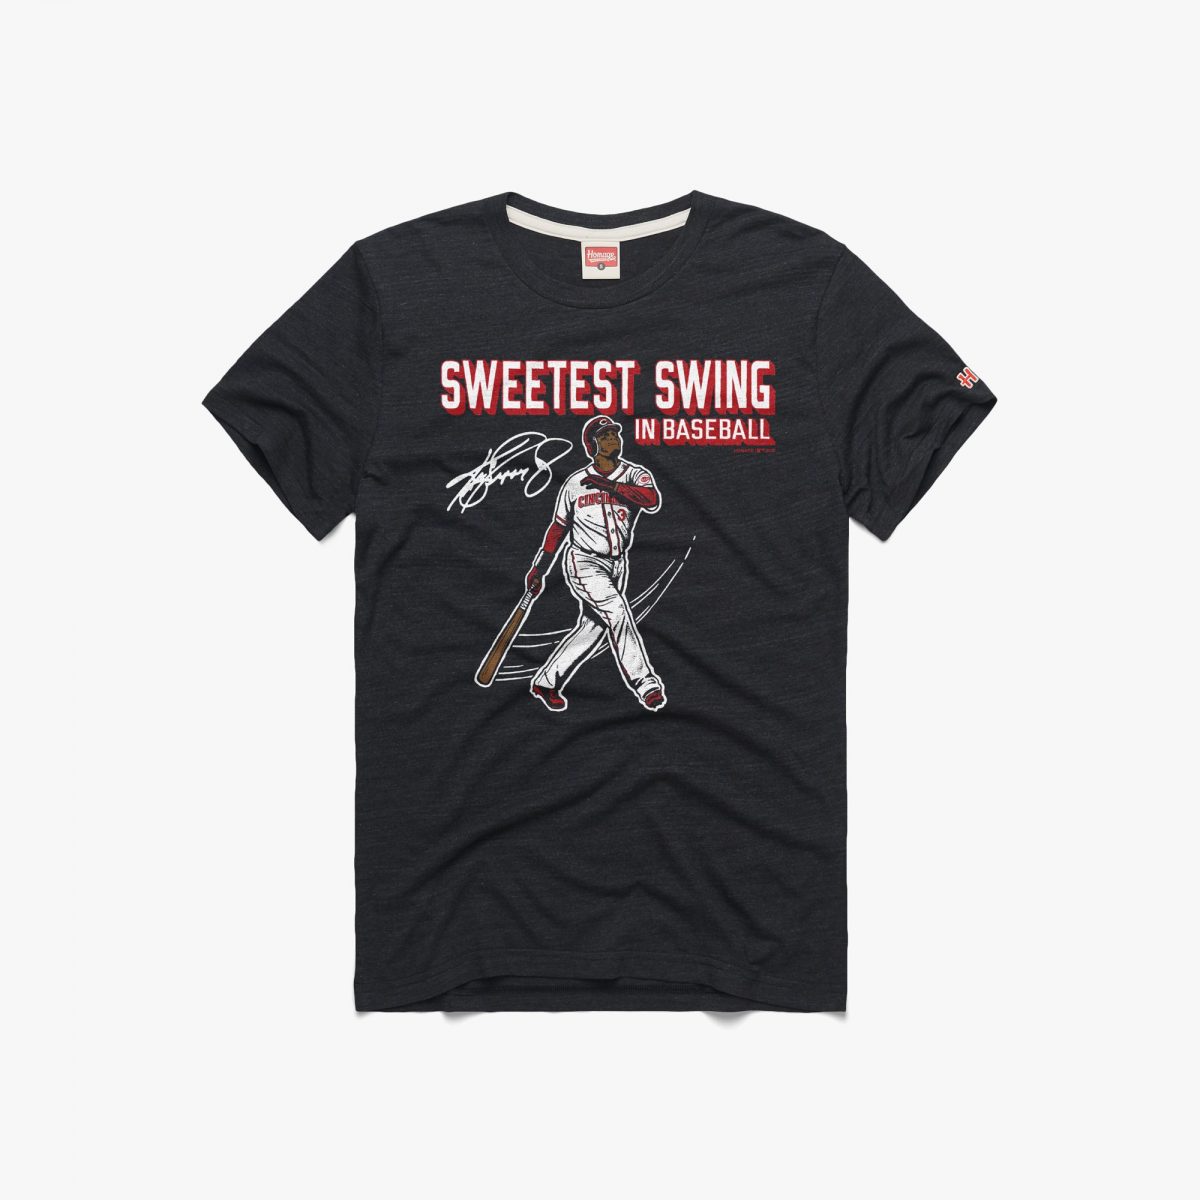 Ken Griffey Jr Sweetest Swing In Baseball Reds